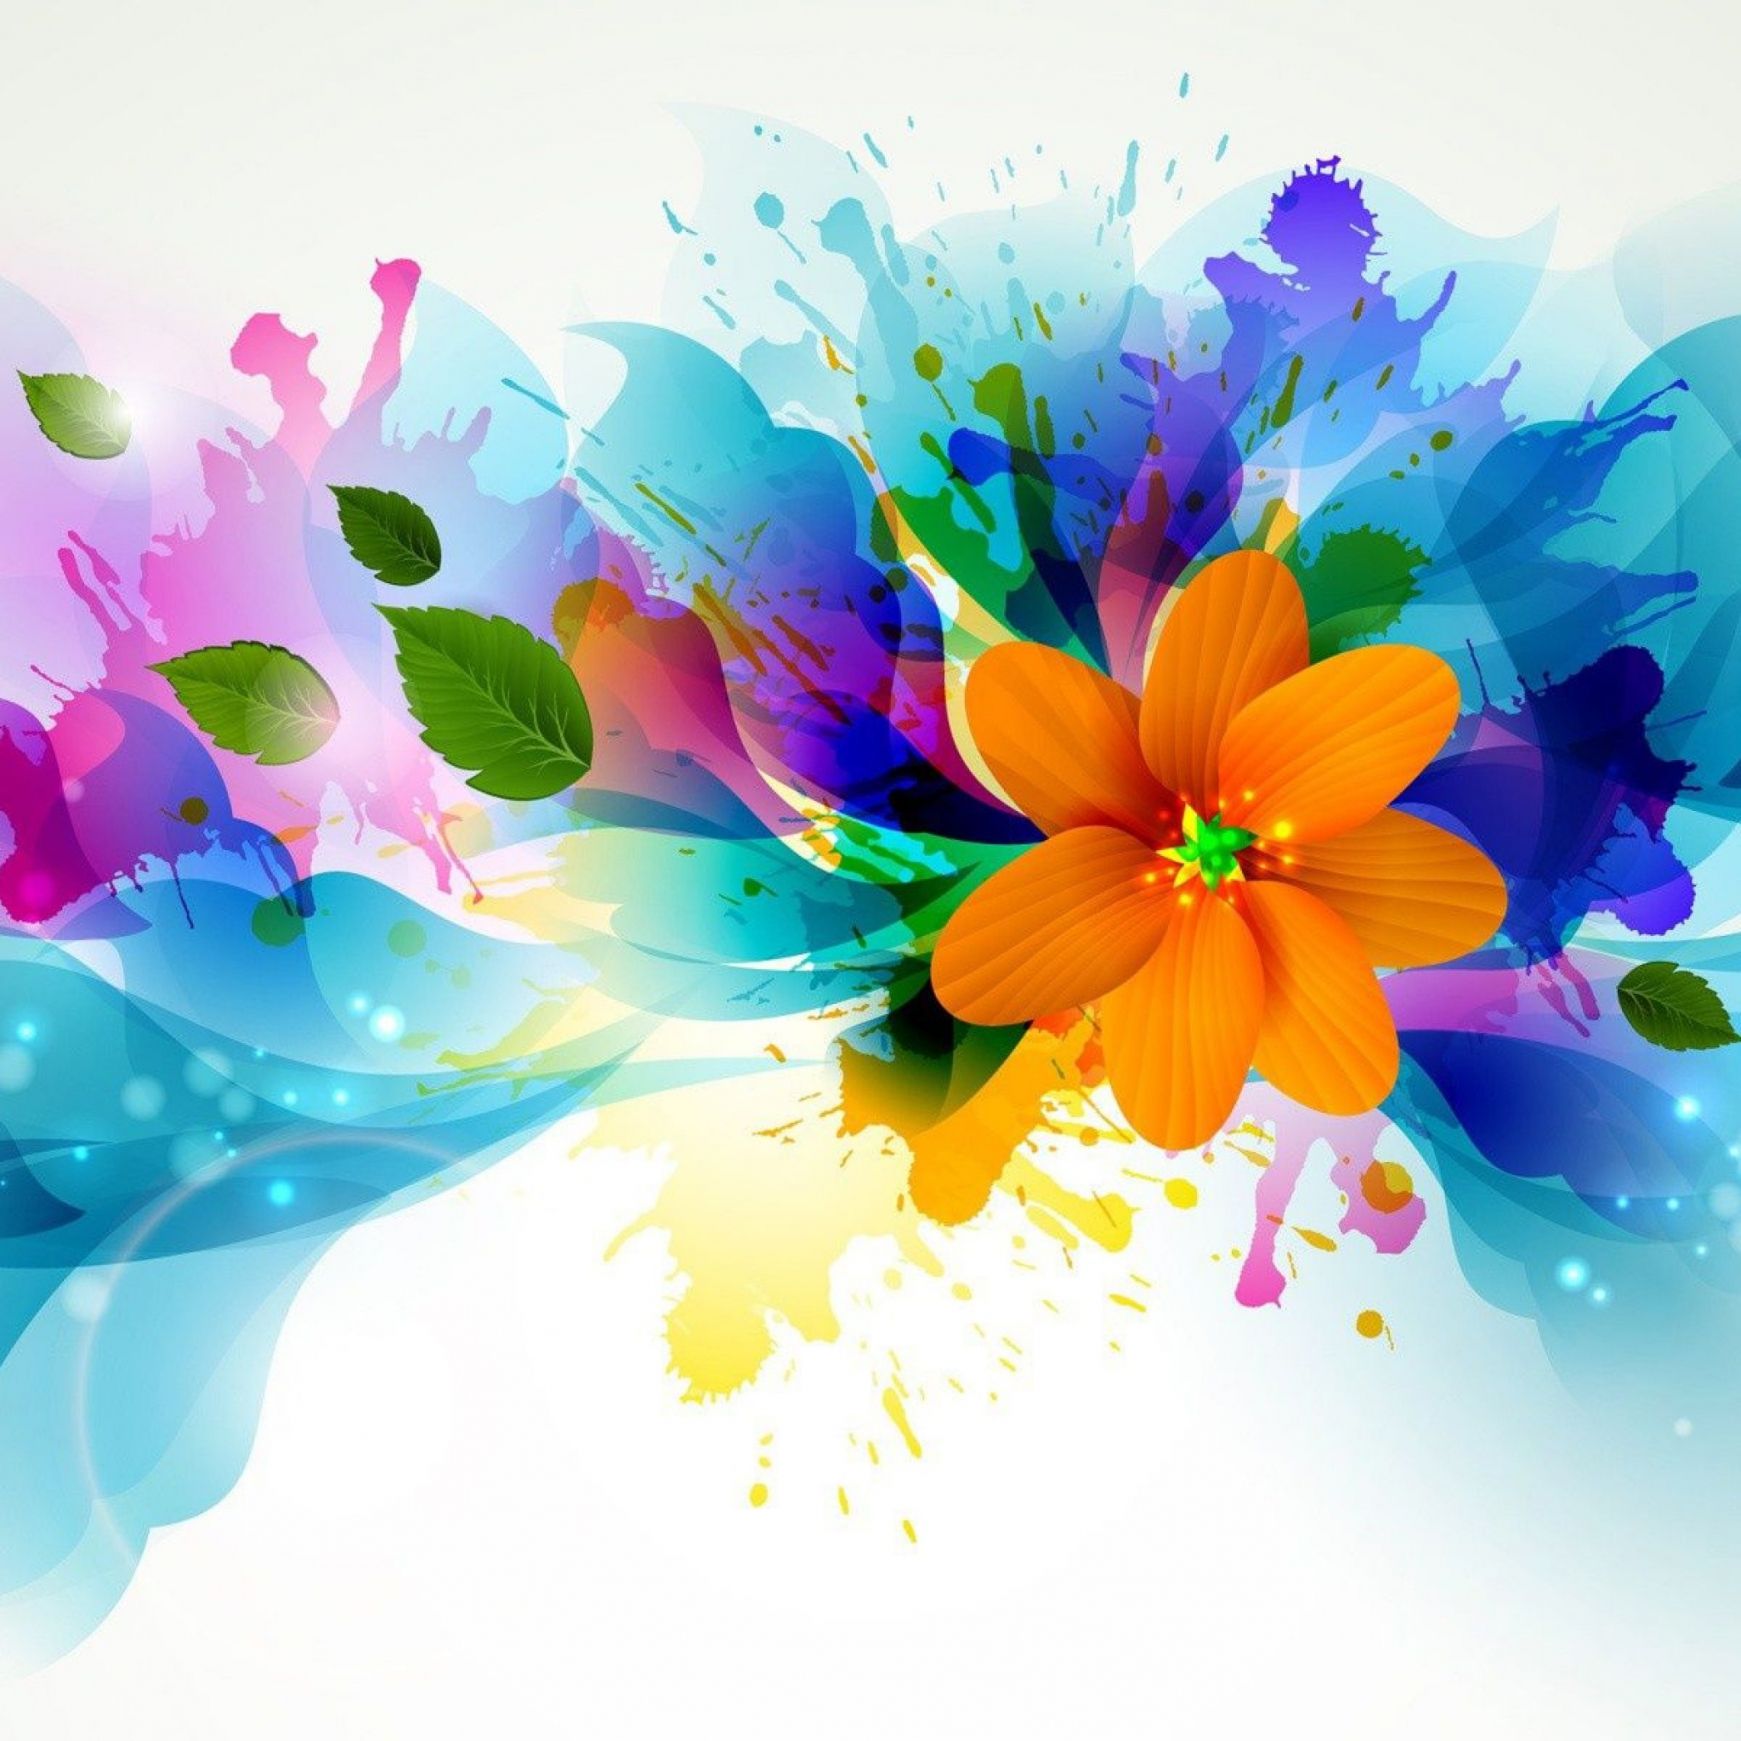 Abstract Flower Design Wallpaper Widescreen Is 4K Wallpaper. Flower iphone wallpaper, Flower wallpaper, Abstract flower art